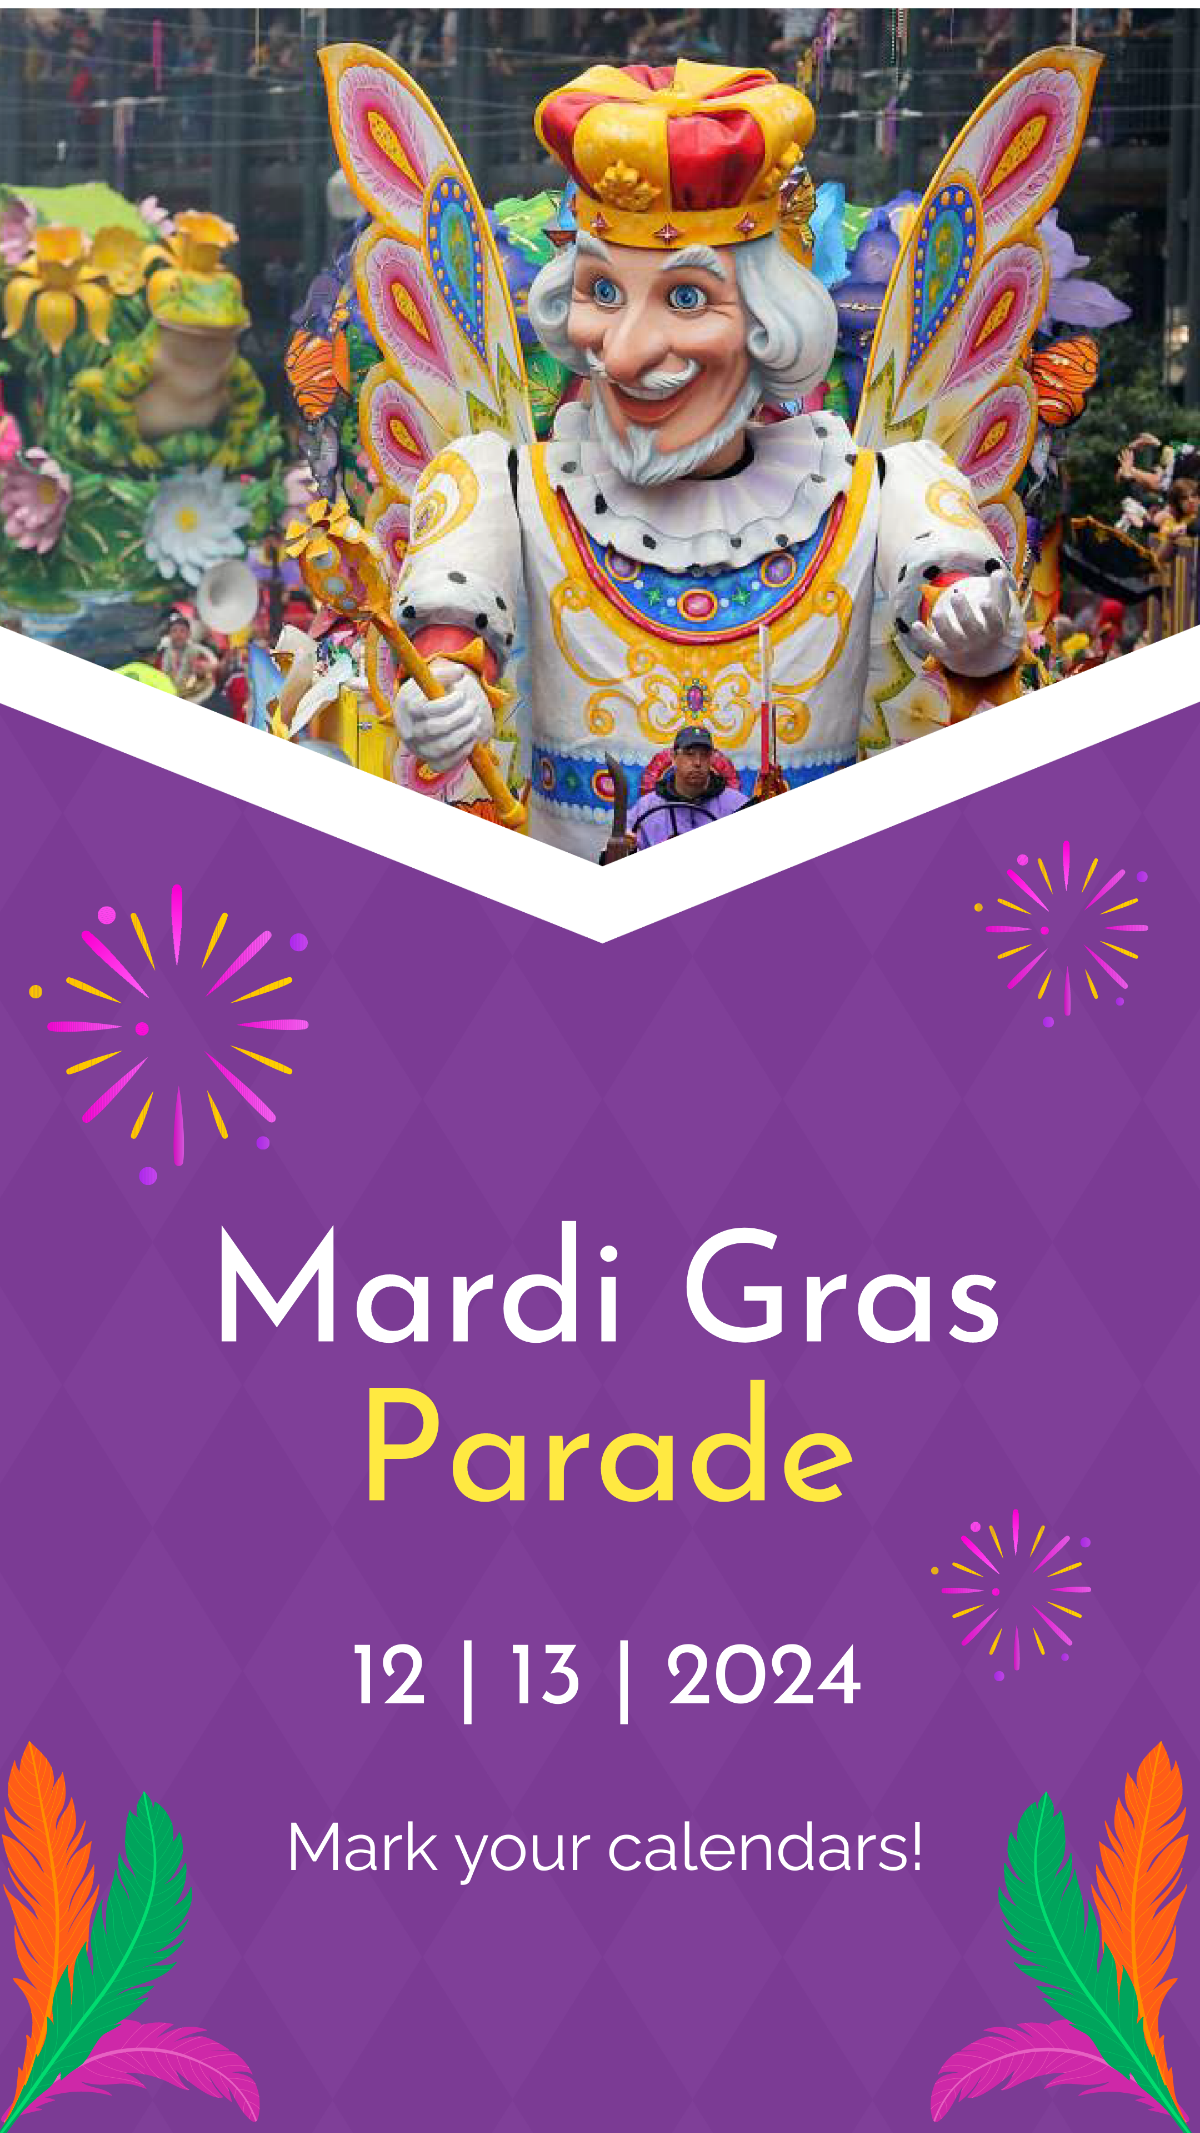 Mardi Gras Parade Schedule Template